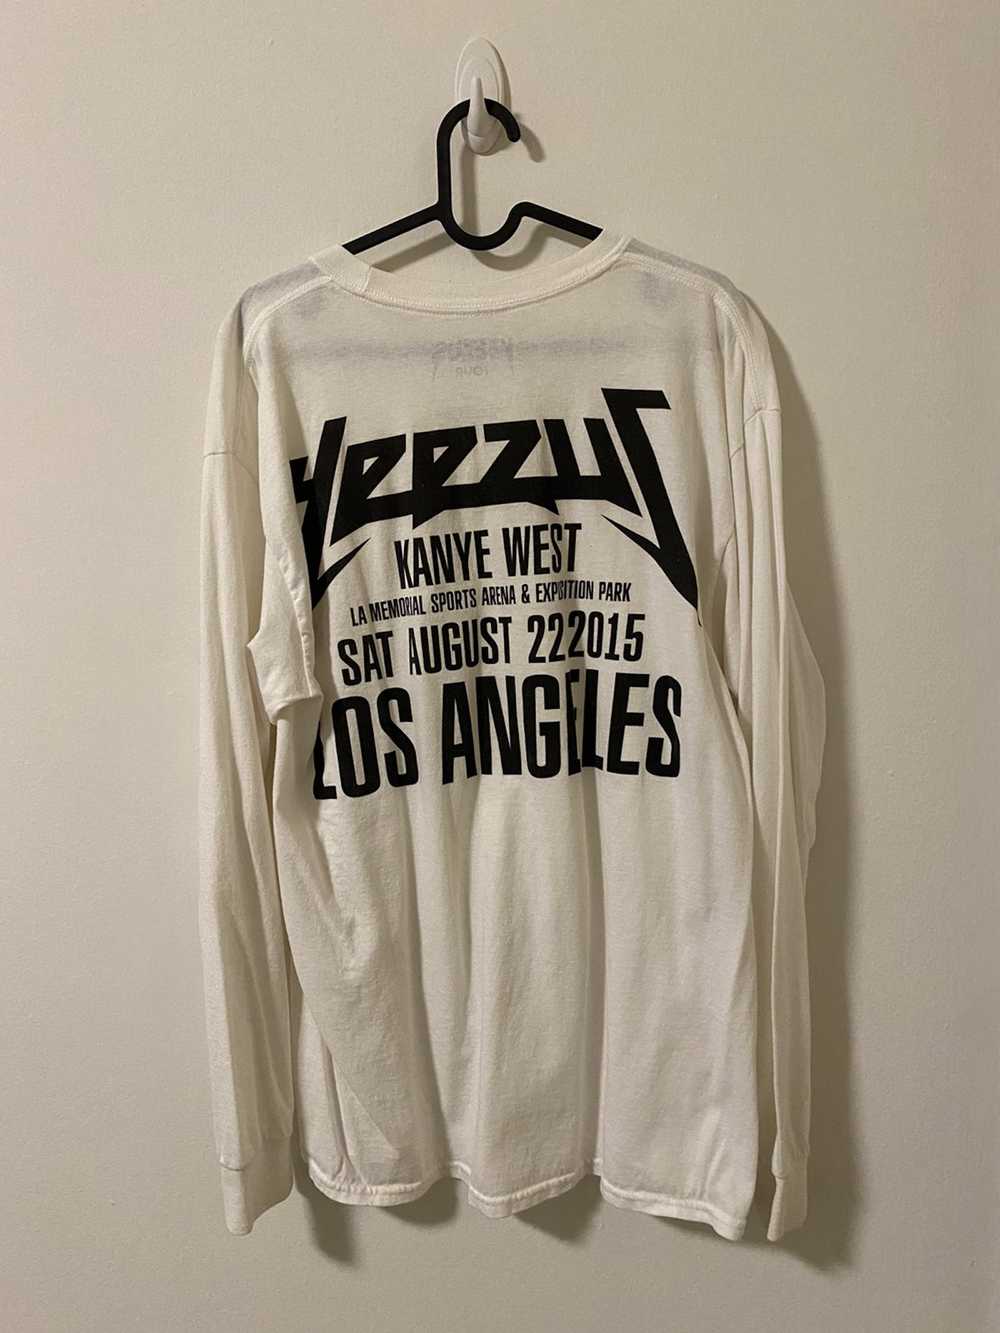 Kanye West Yeezus 2015 Tour Shirt - image 5